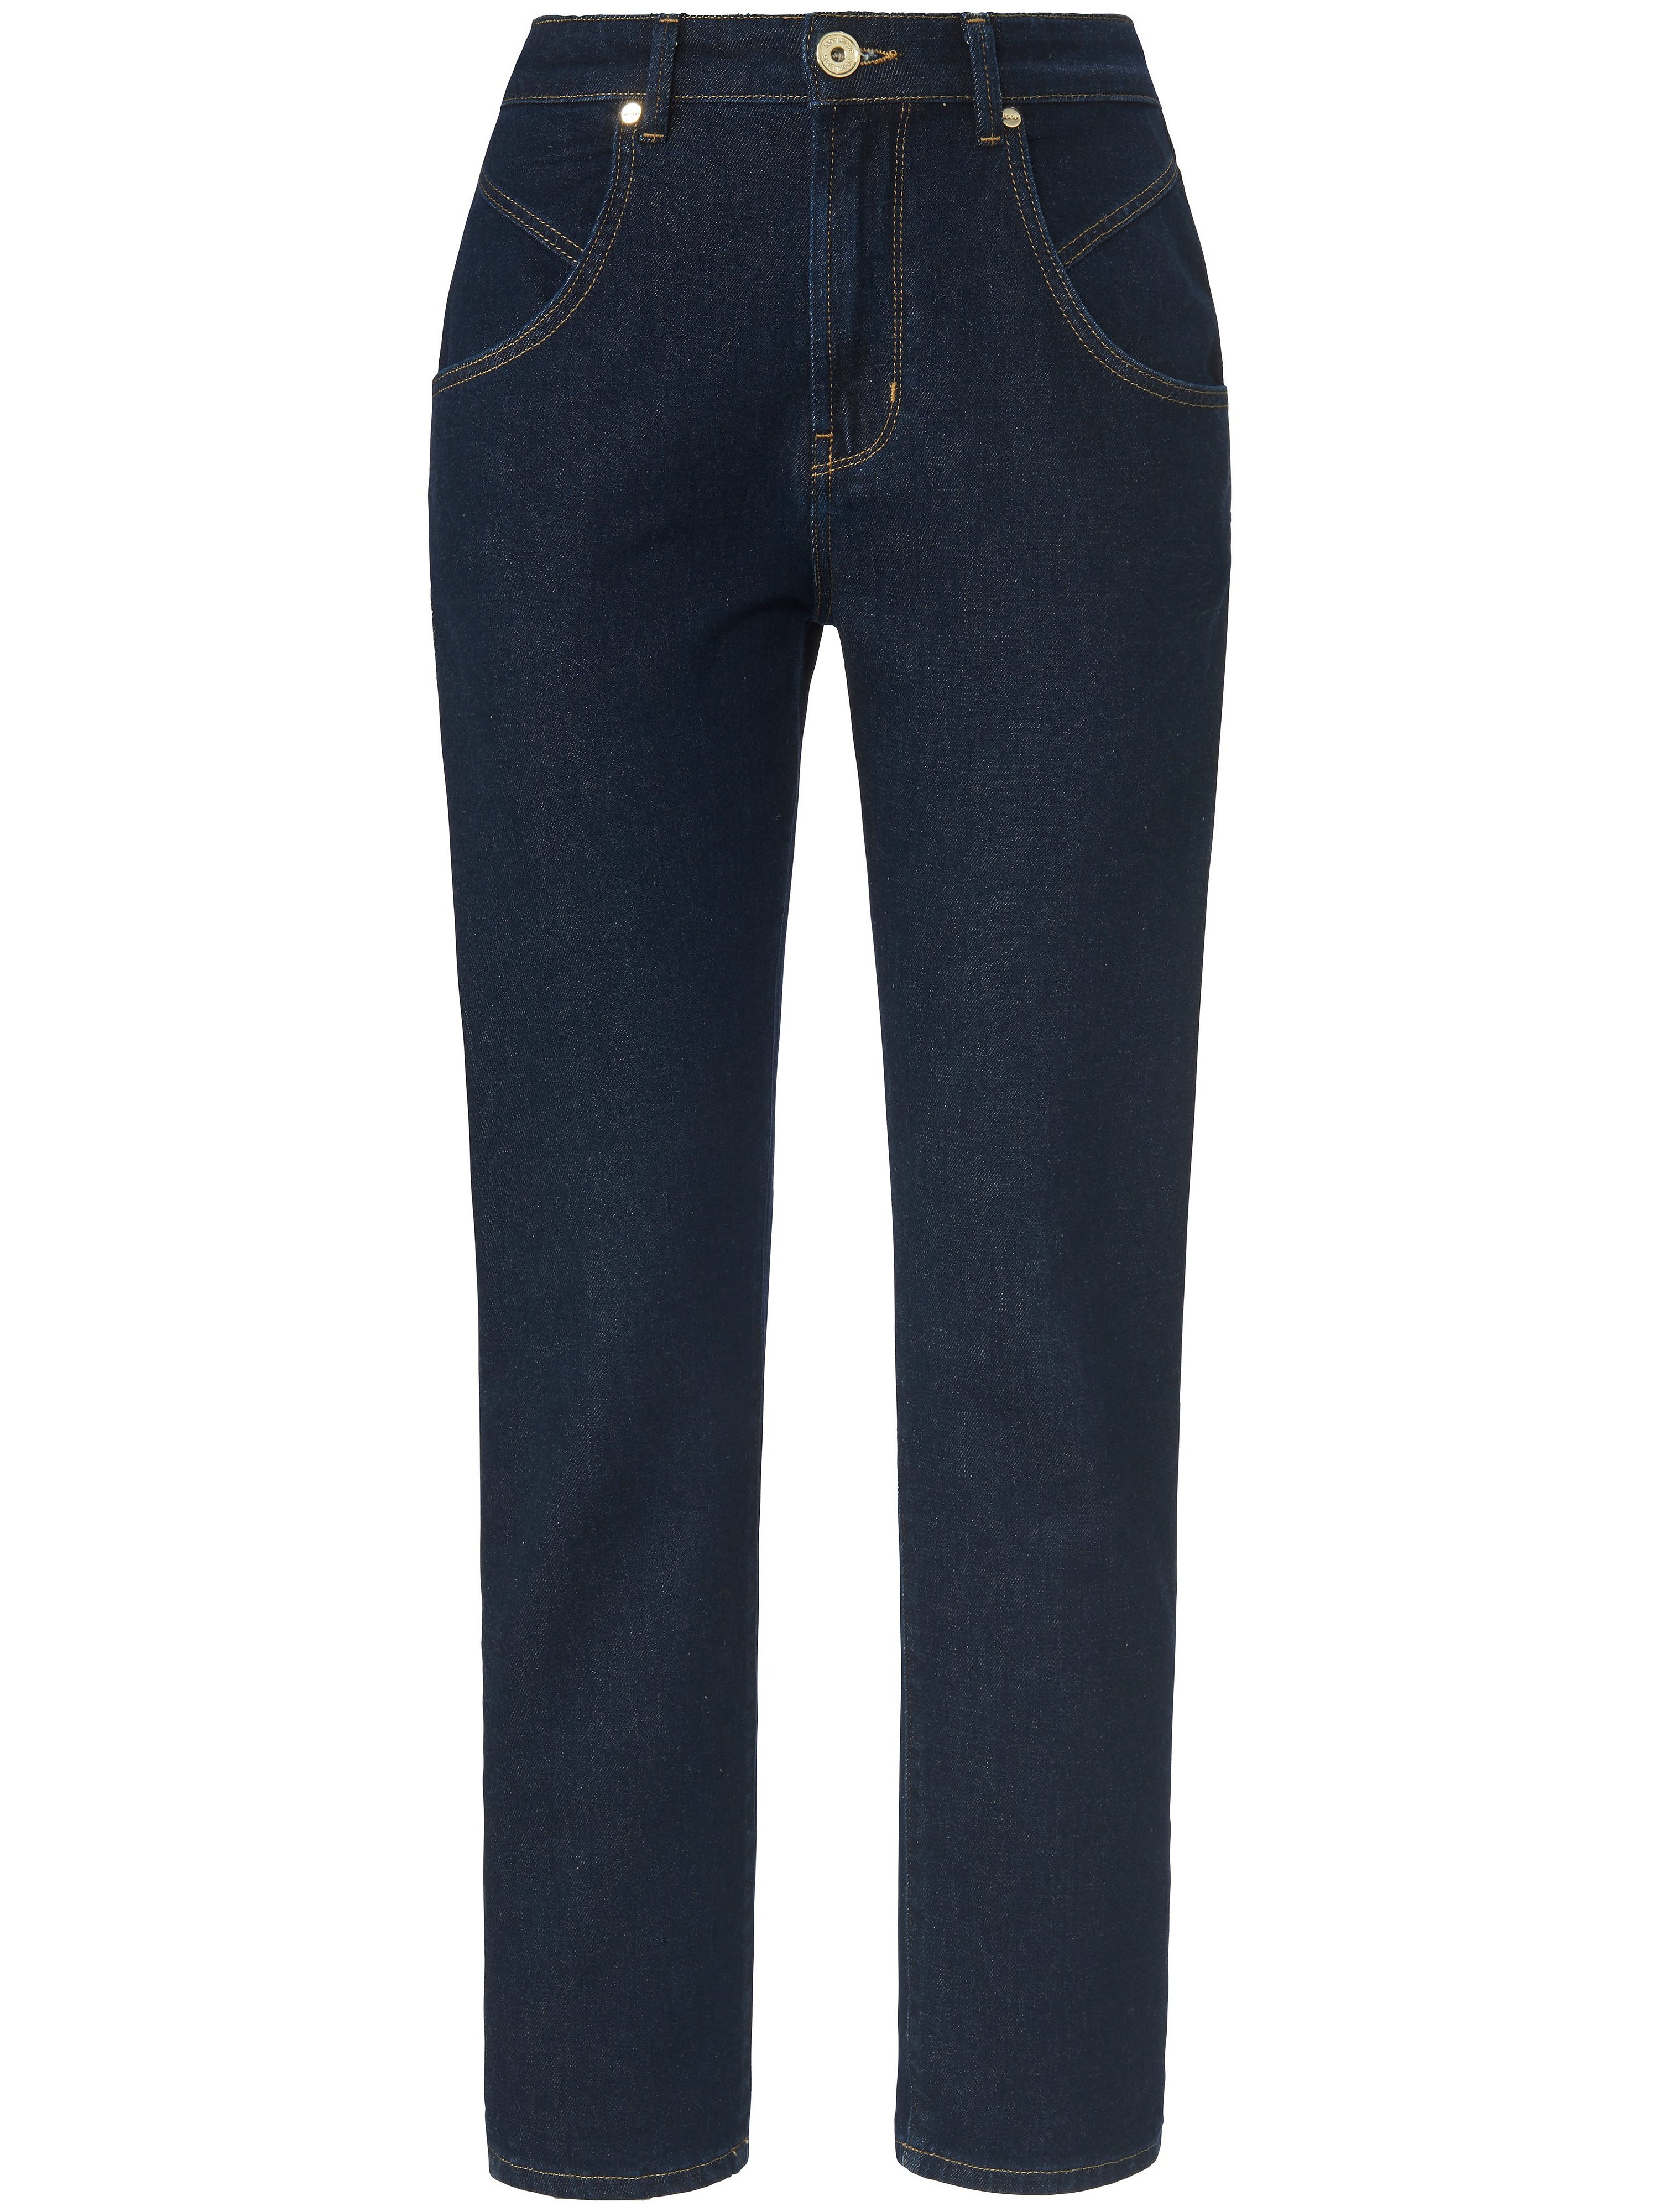 Enkellange jeans in 4 pocketsmodel Van Joop denim